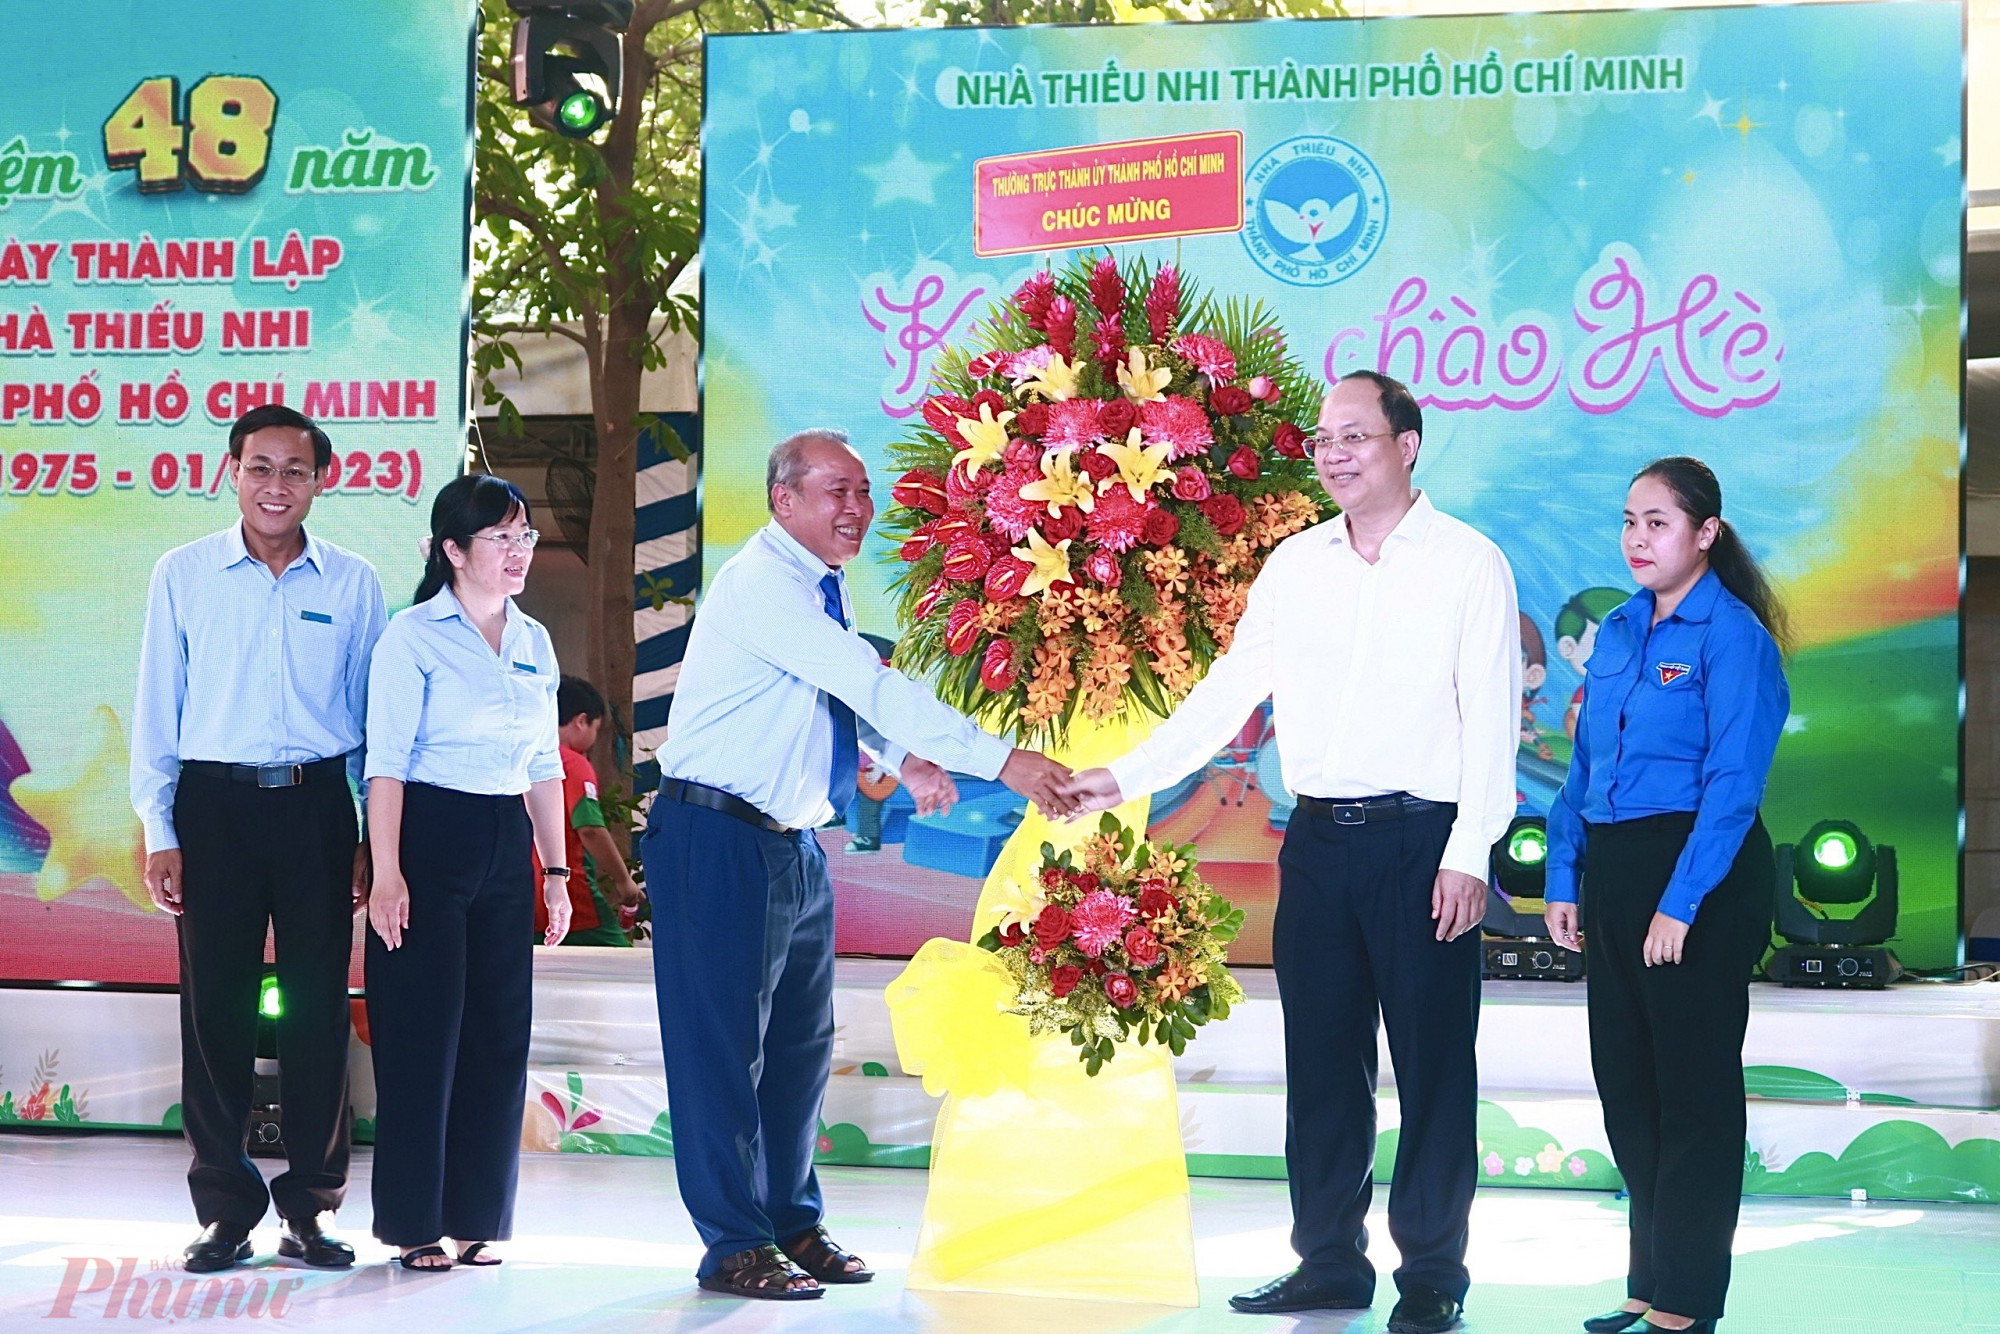 Phó bí thư Thành ủy TPHCM Nguyễn Hồ Hải bày lòng sự tri ân và tặng hoa chúc mừng đến cán bộ, công nhân viên đang công tác tại Nhà thiếu nhi TP.